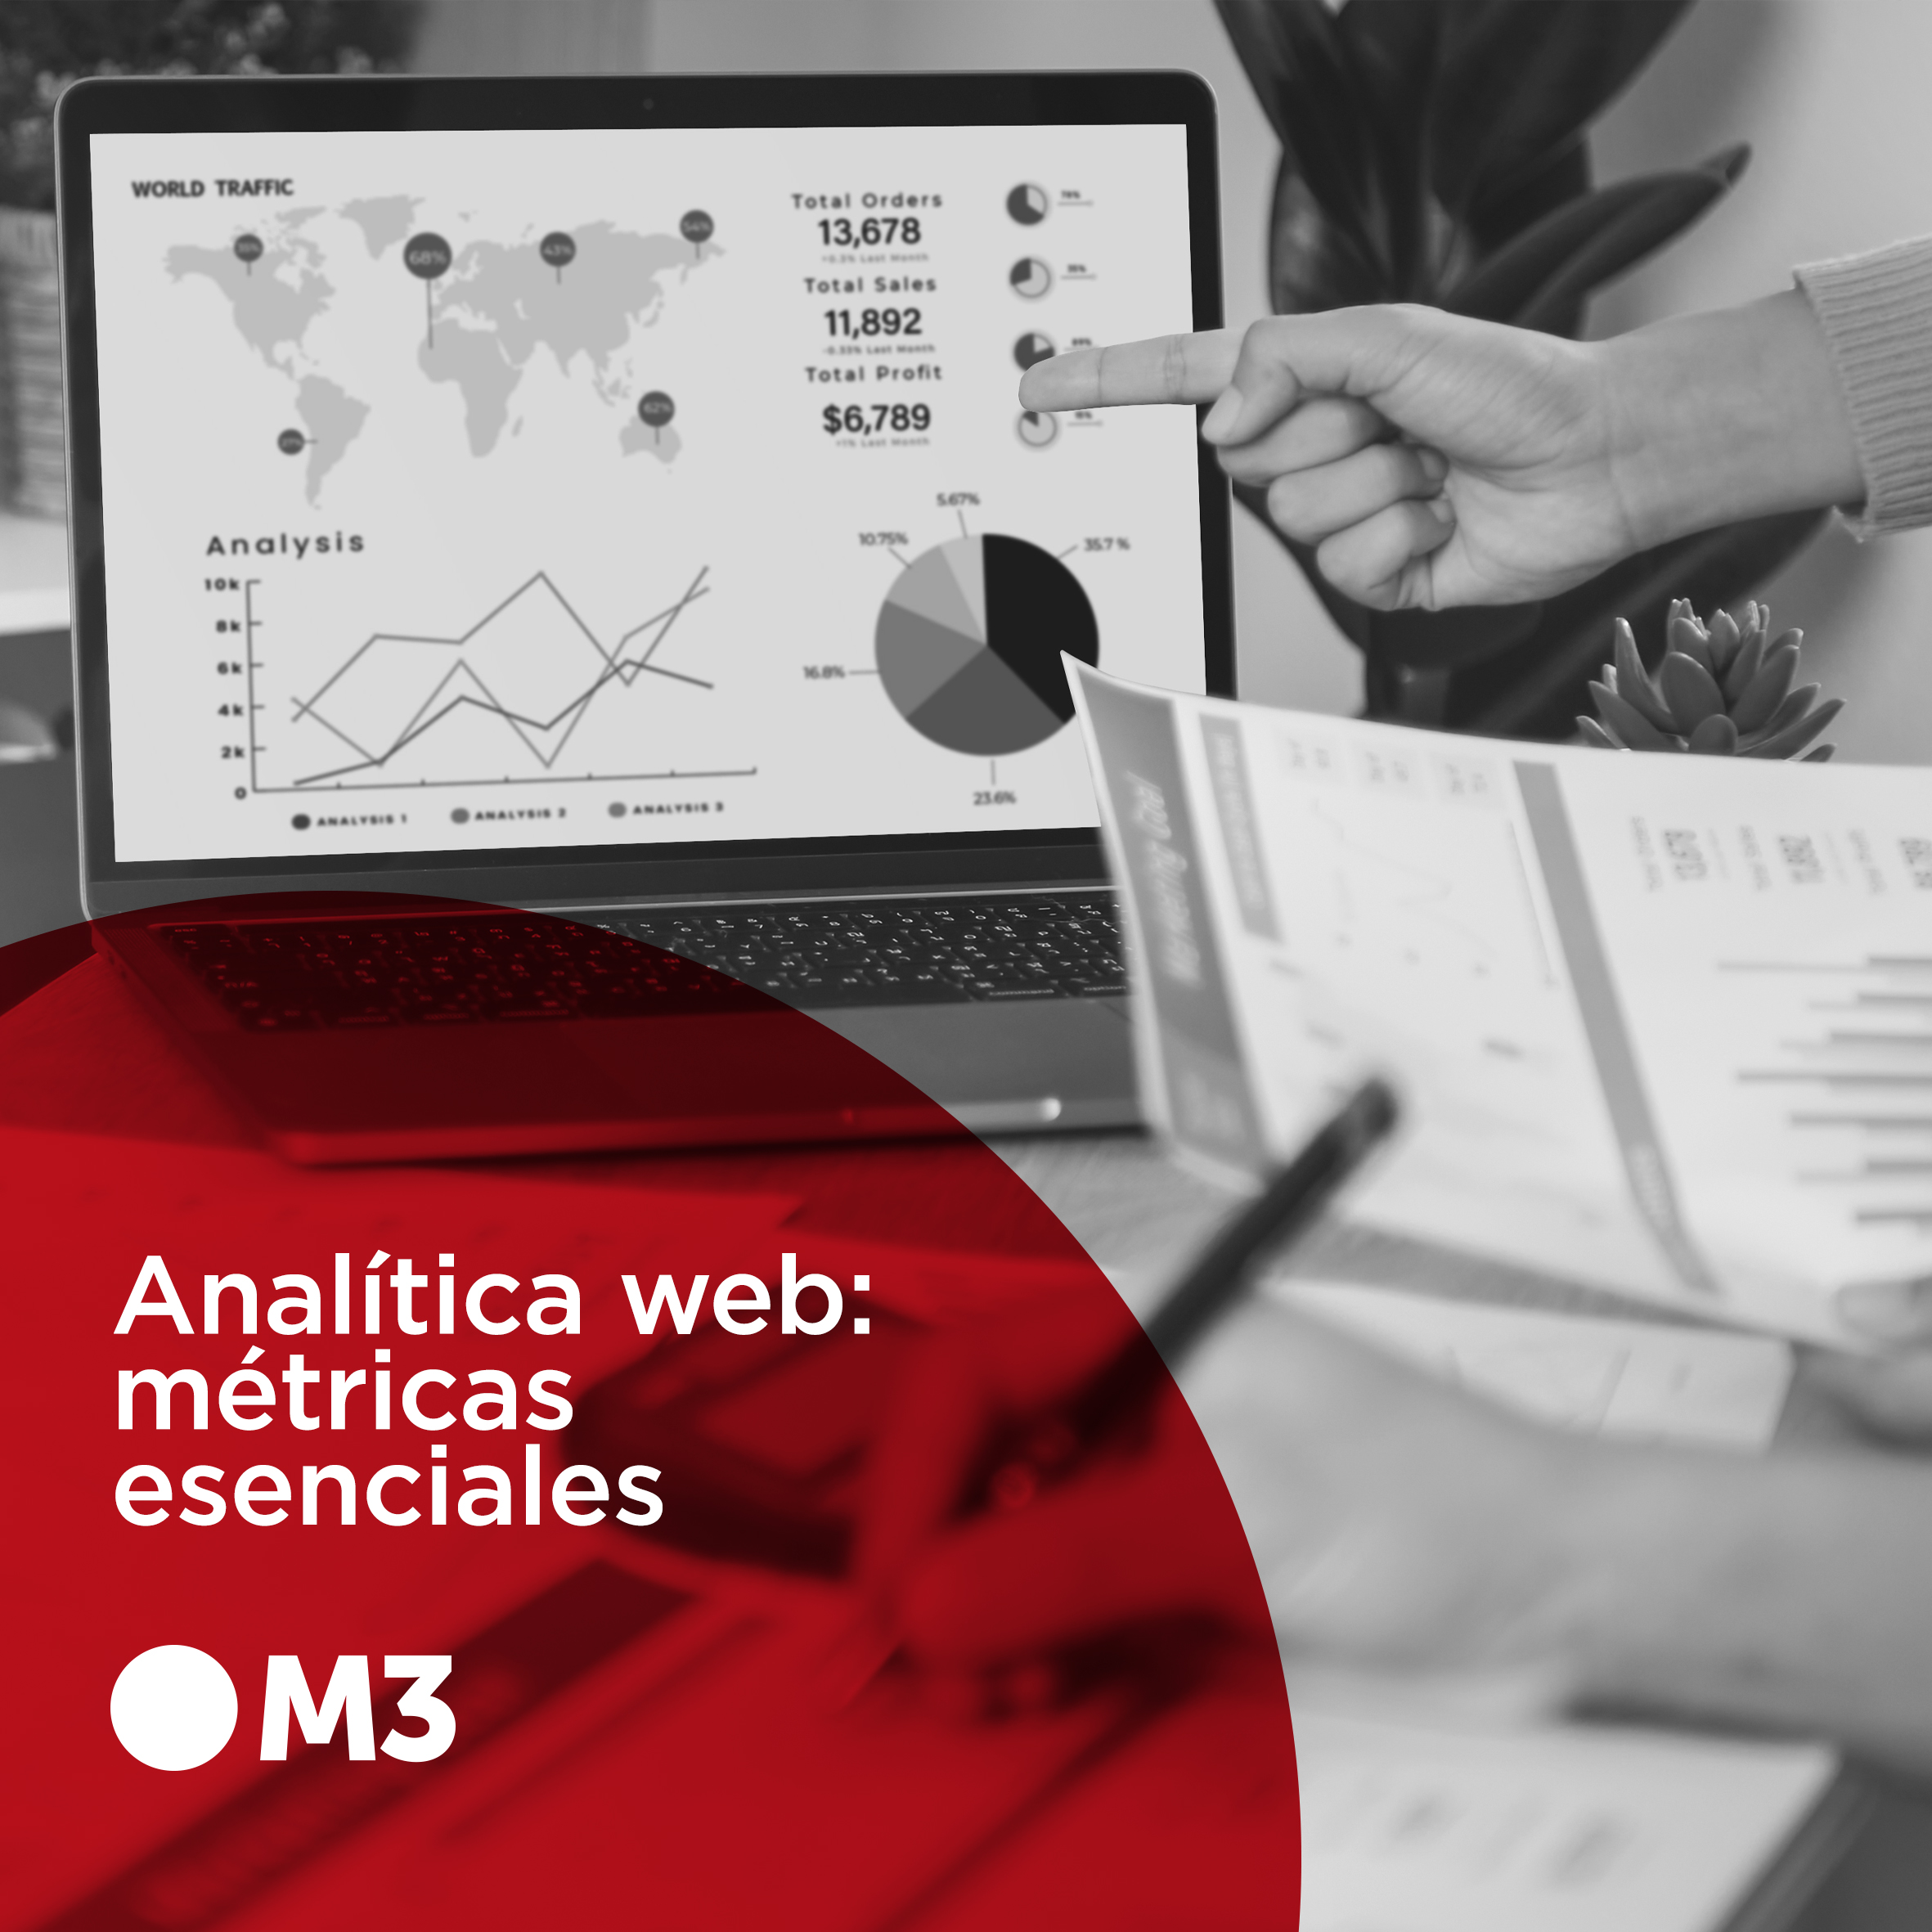 Analítica web: métricas esenciales